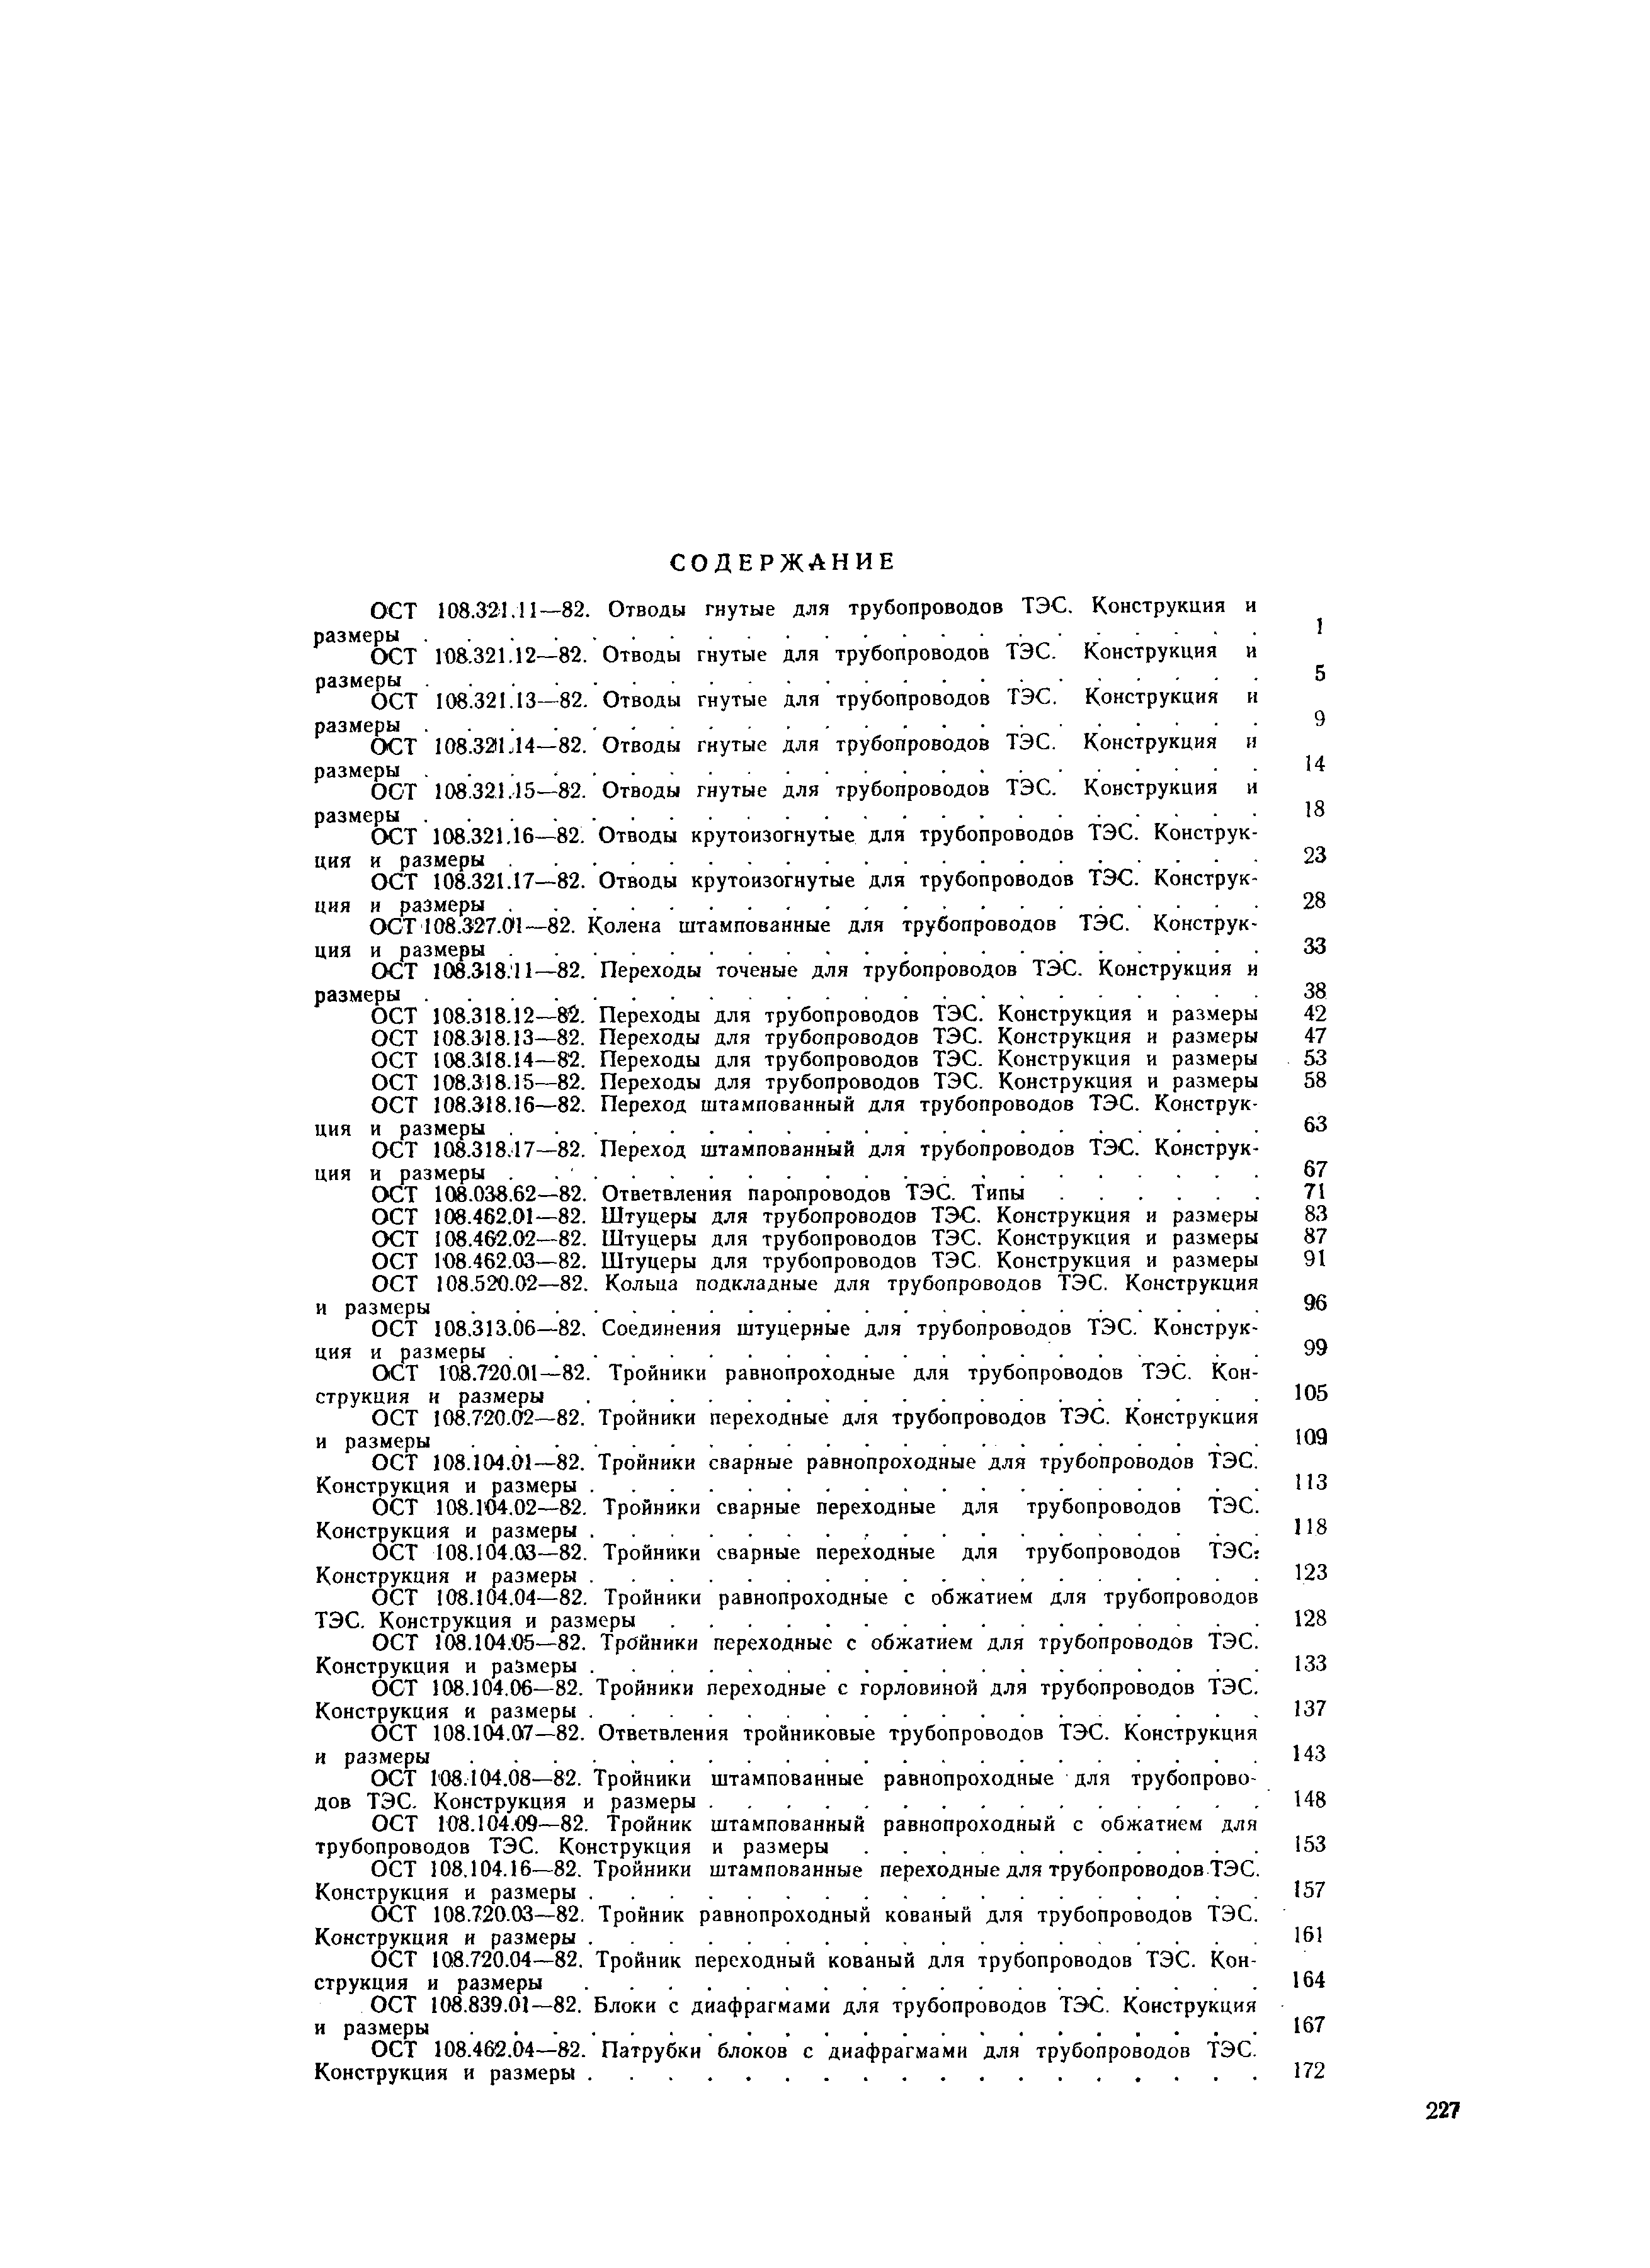 ОСТ 108.462.06-82